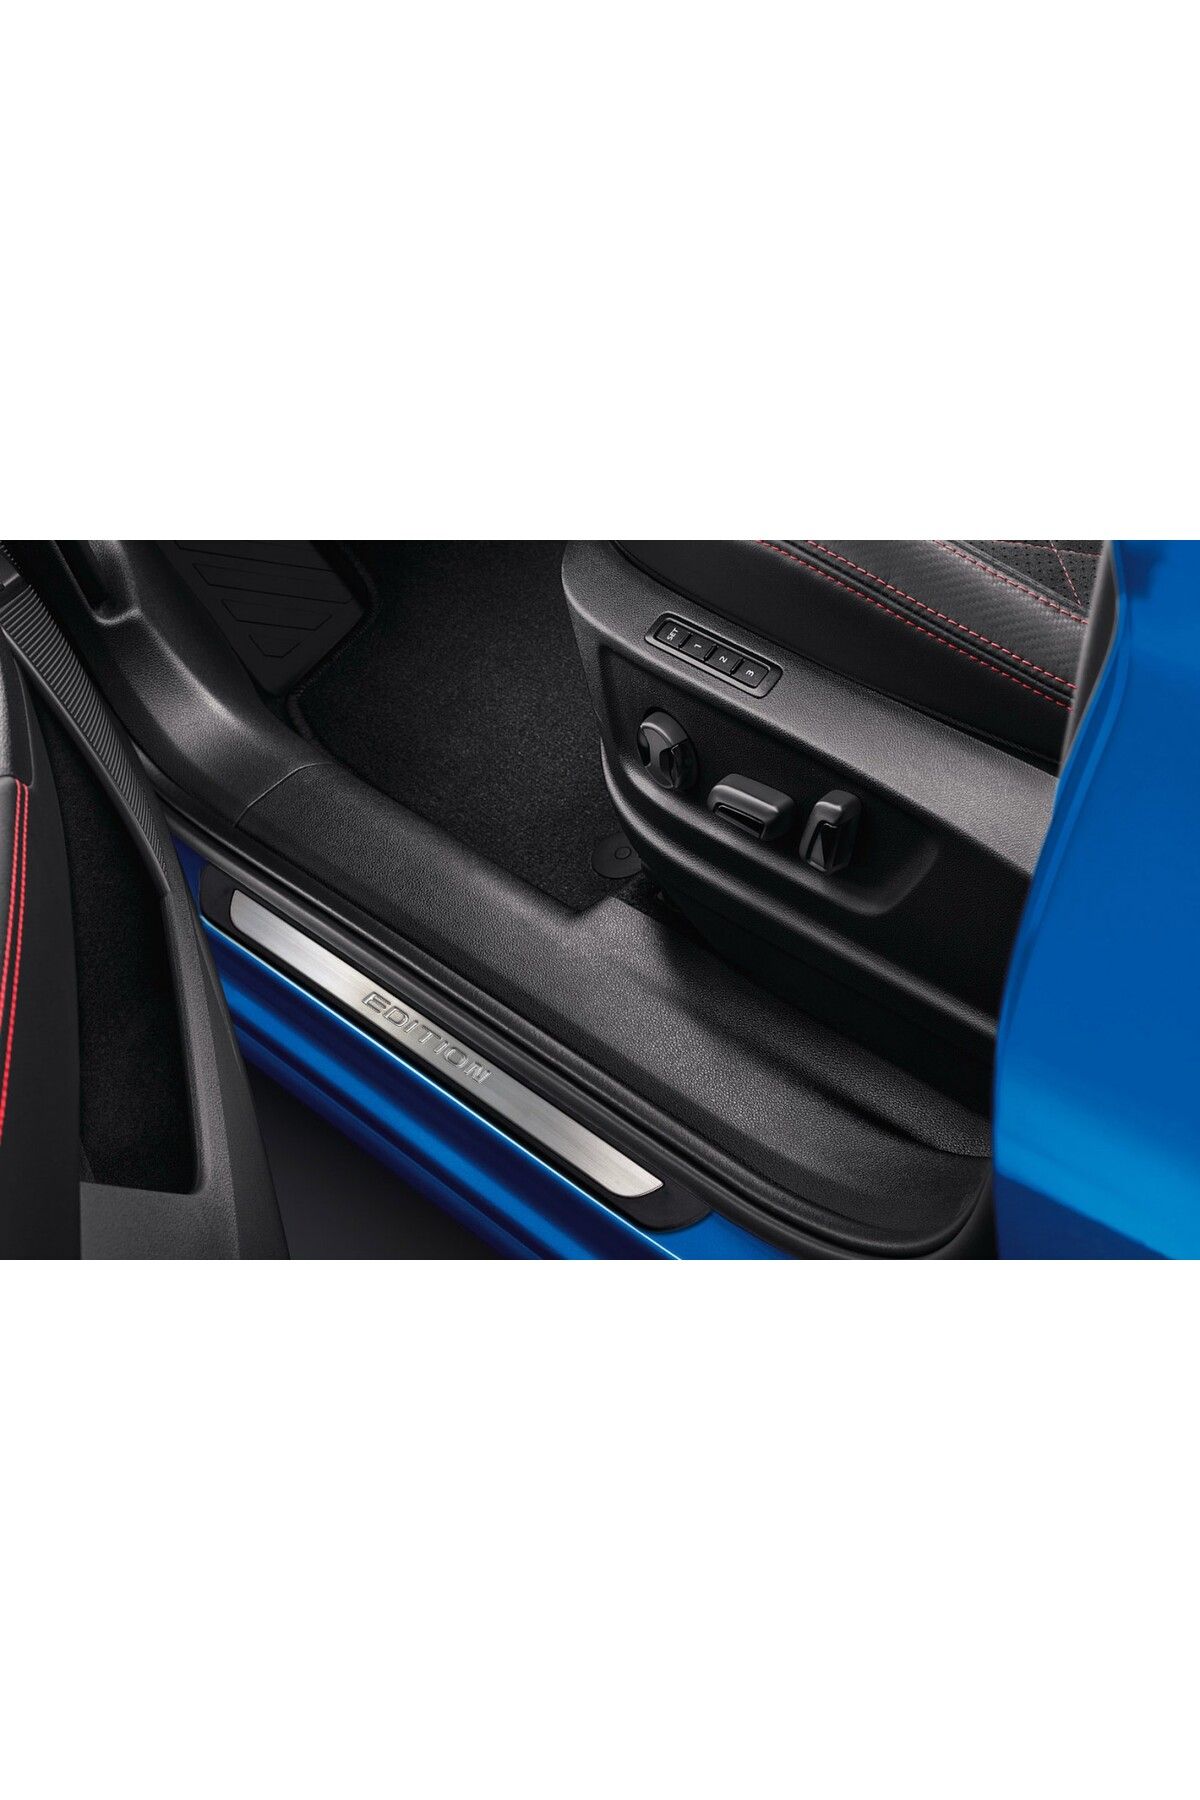 S Dizayn S-dizayn Peugeot 508 Sw Krom Kapı Eşik Koruması Edition Line 2010-2014 4 Parça